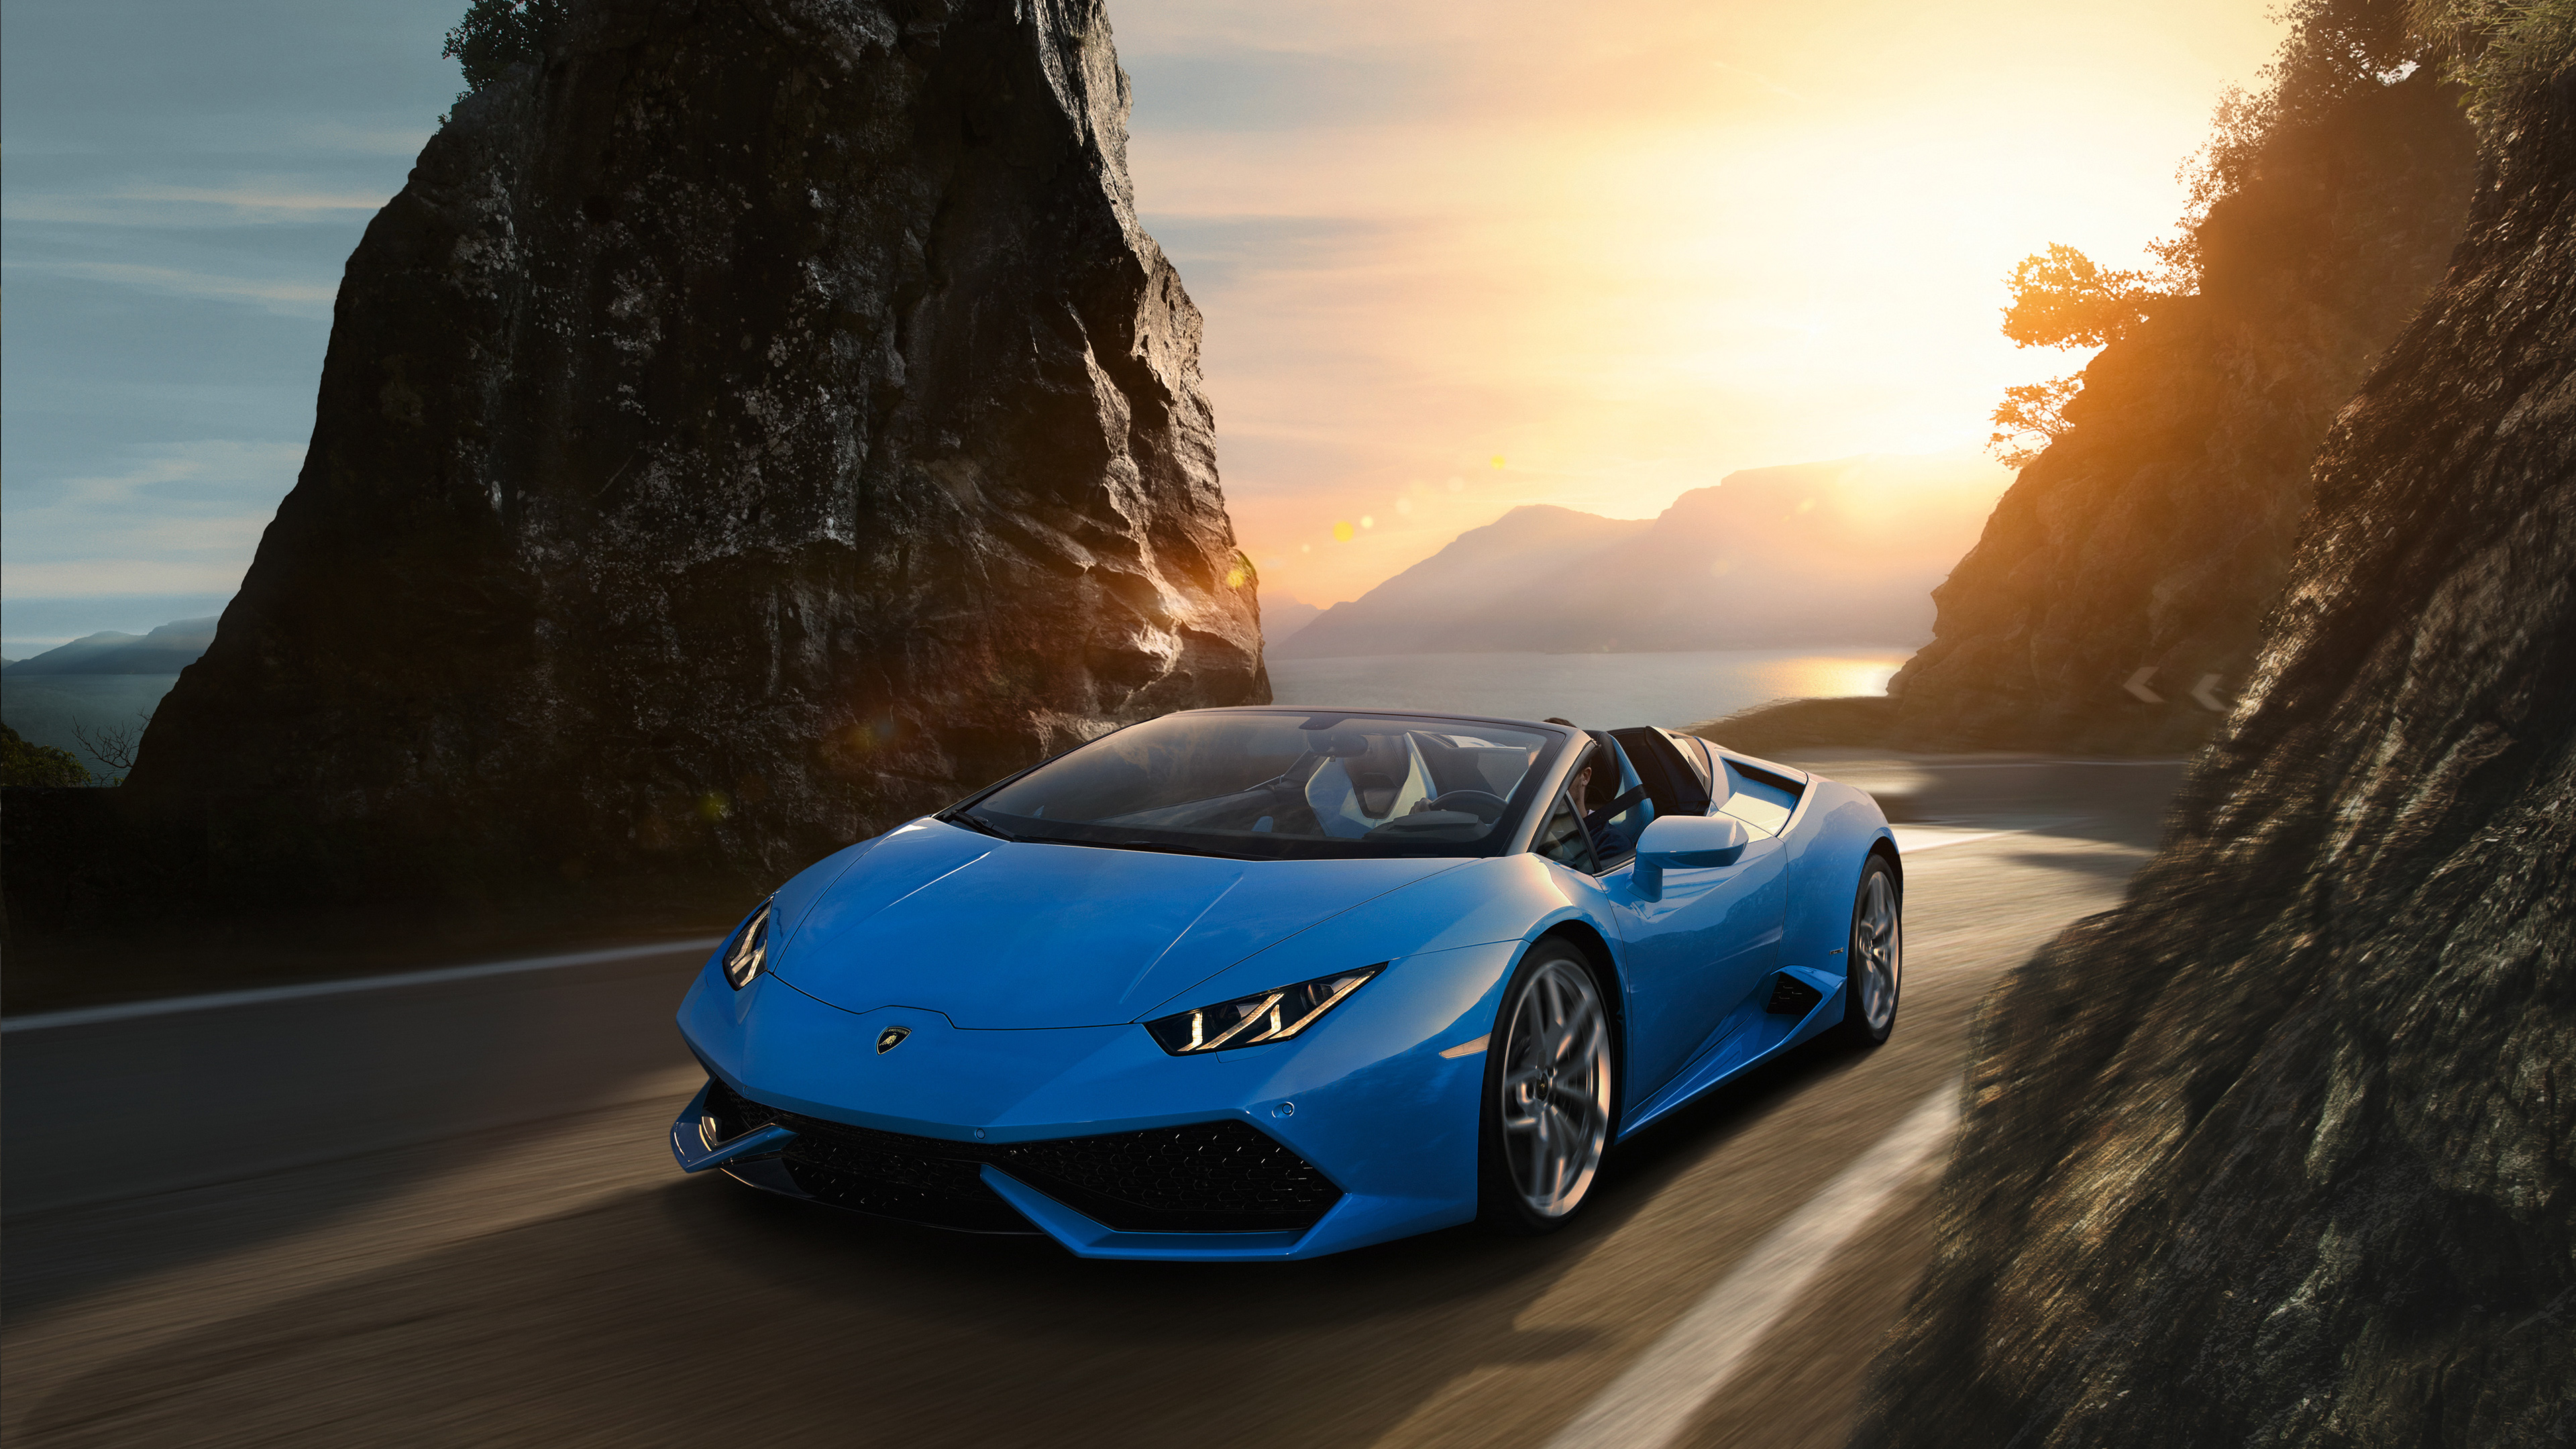 Sky Blue Lamborghini Huracan 4k, HD Cars, 4k Wallpapers ...